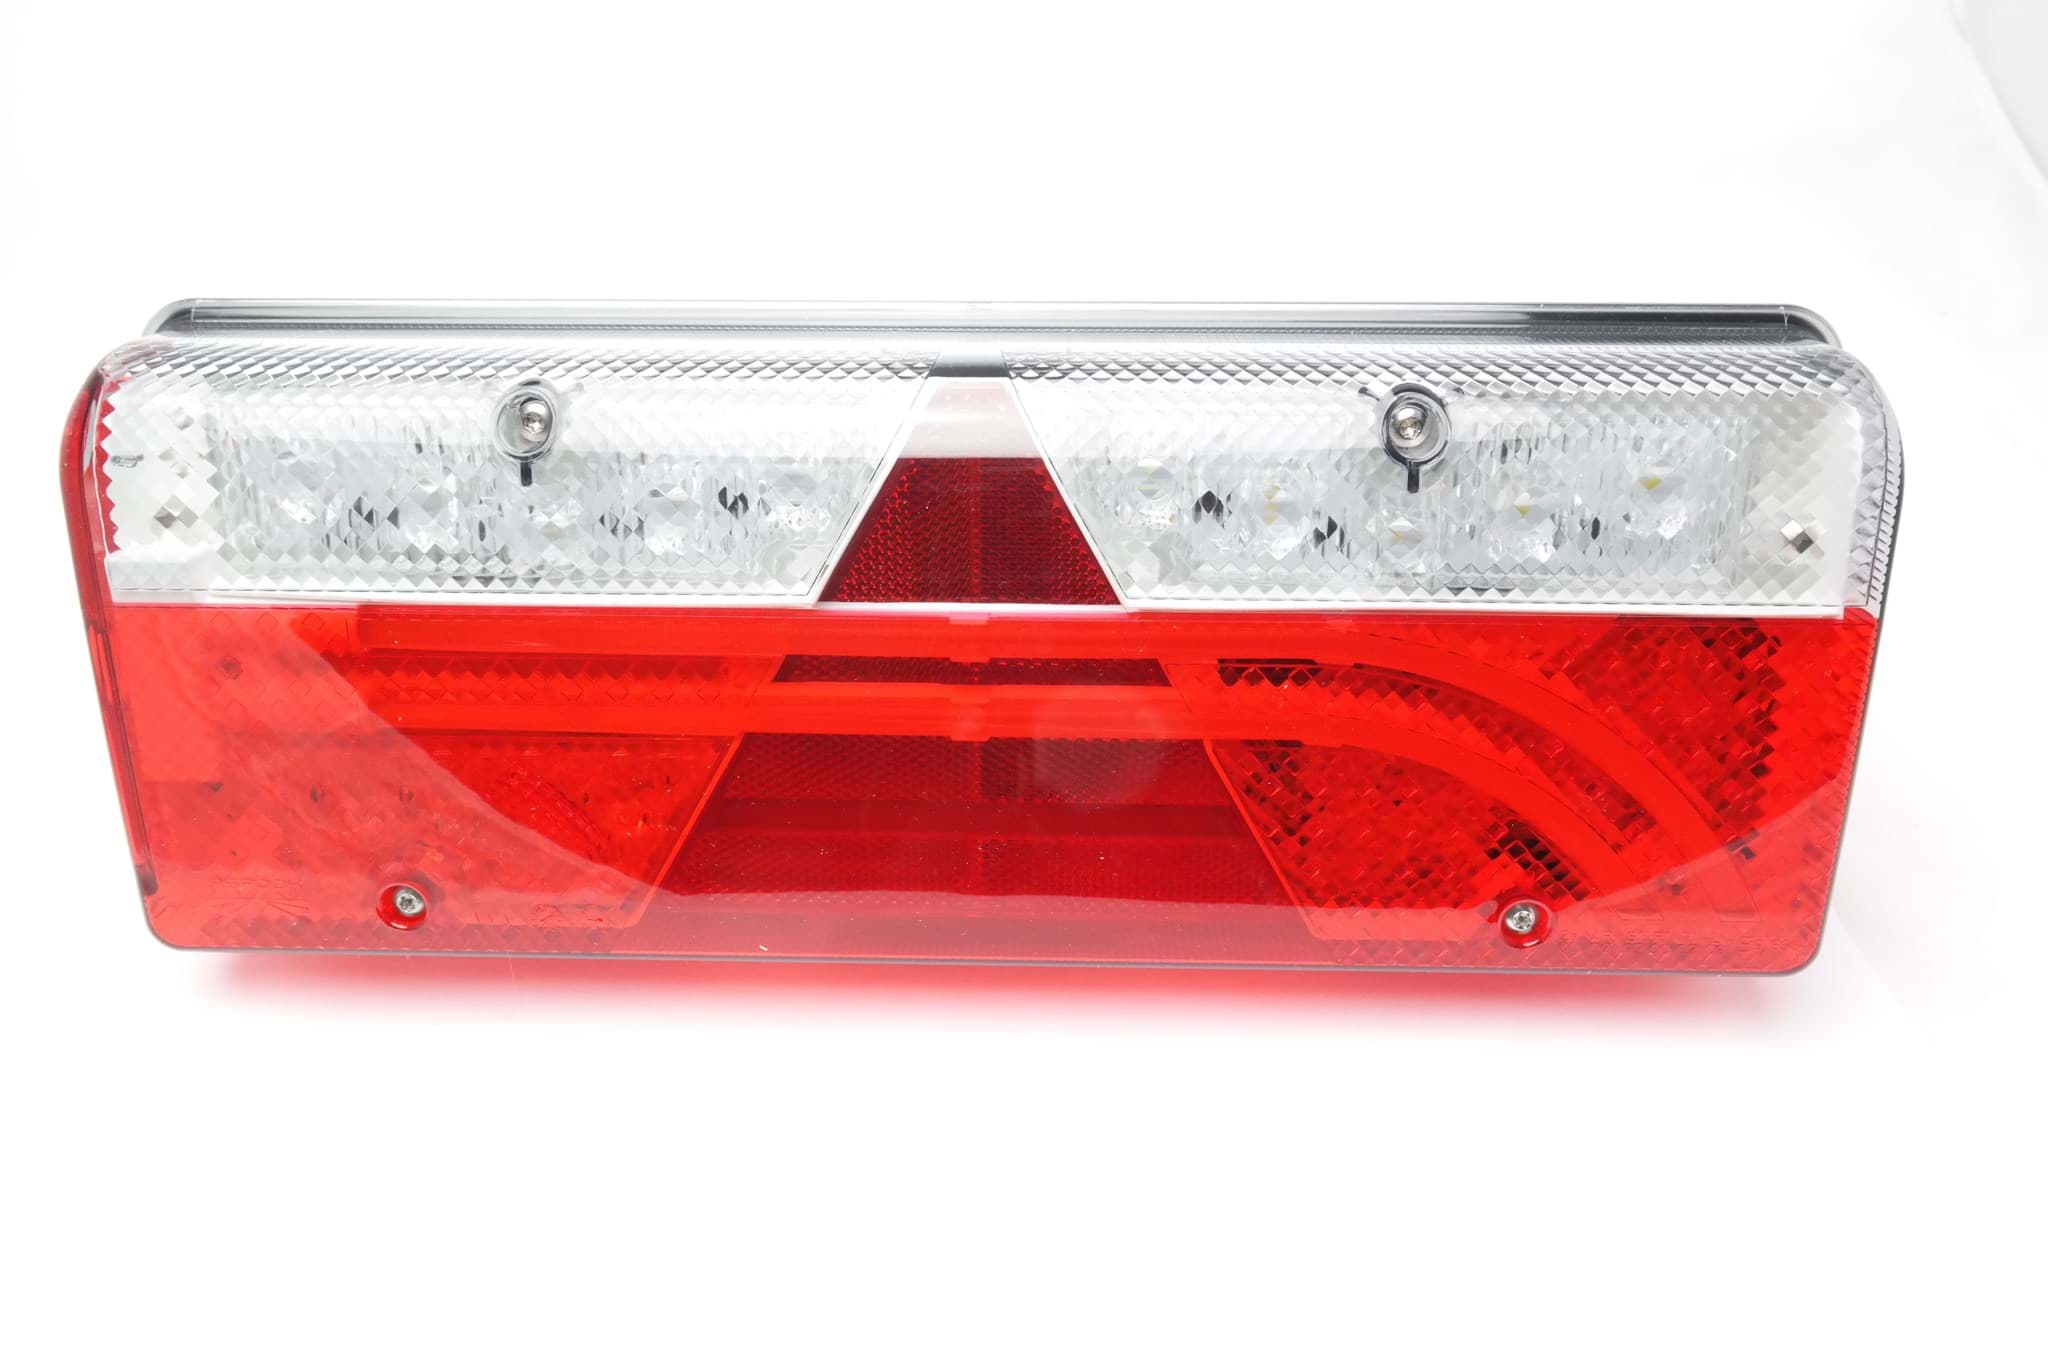 Pichler LED Blinklicht 11mm (rot) acheter en ligne chez Modellsport  Schweighofer